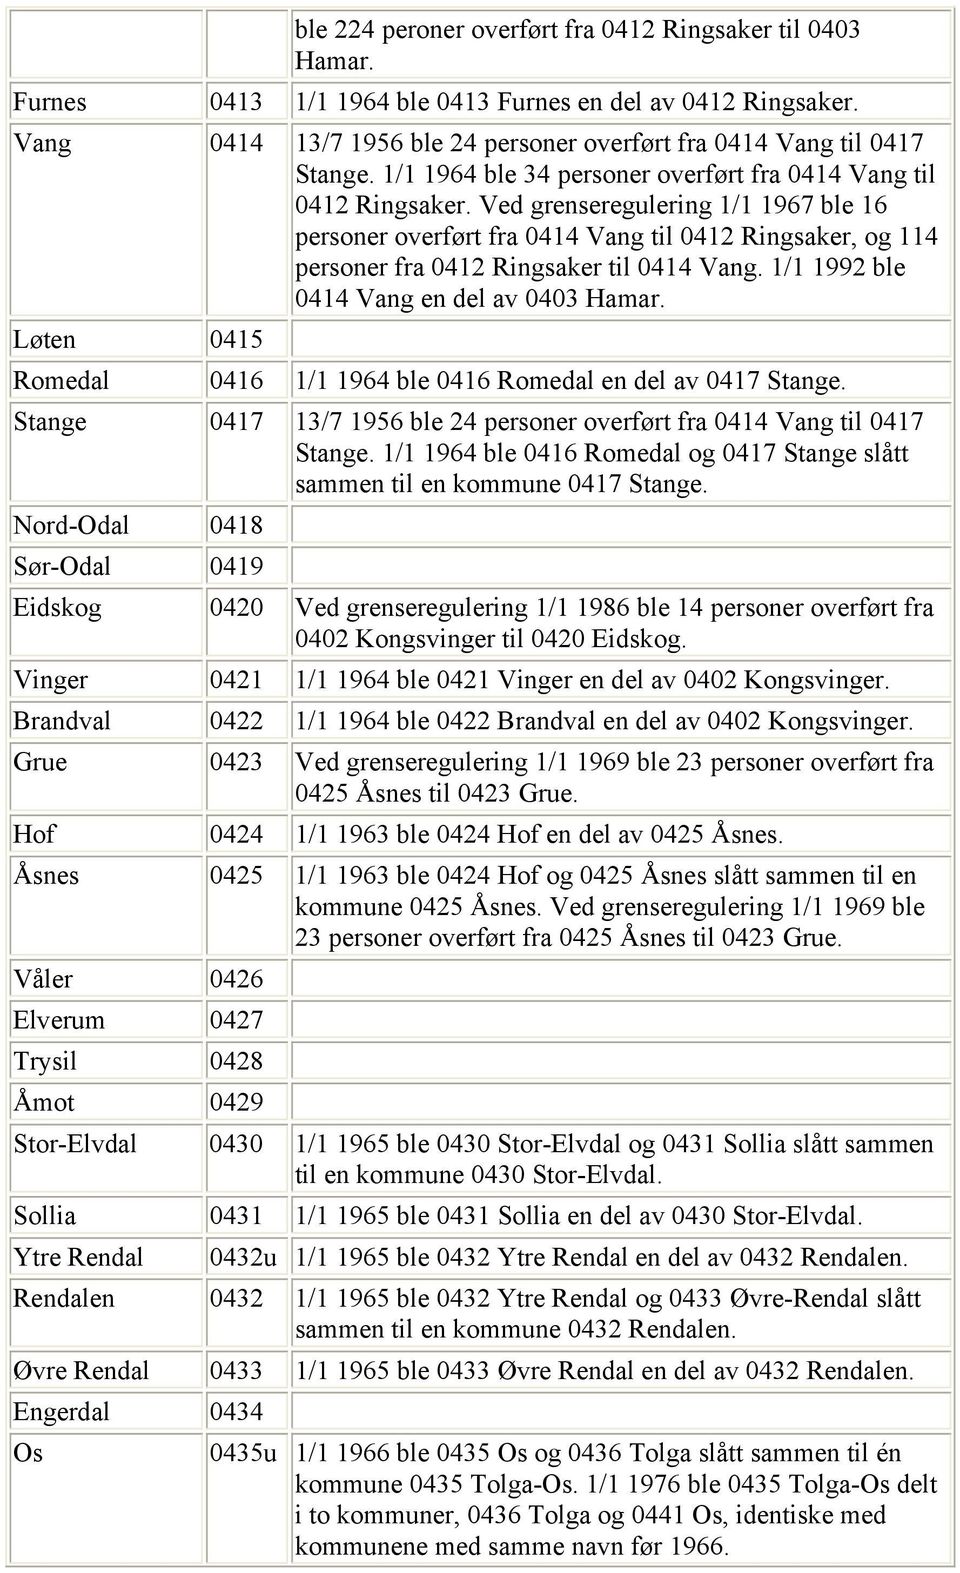 Ved grenseregulering 1/1 1967 ble 16 personer overført fra 0414 Vang til 0412 Ringsaker, og 114 personer fra 0412 Ringsaker til 0414 Vang. 1/1 1992 ble 0414 Vang en del av 0403 Hamar.